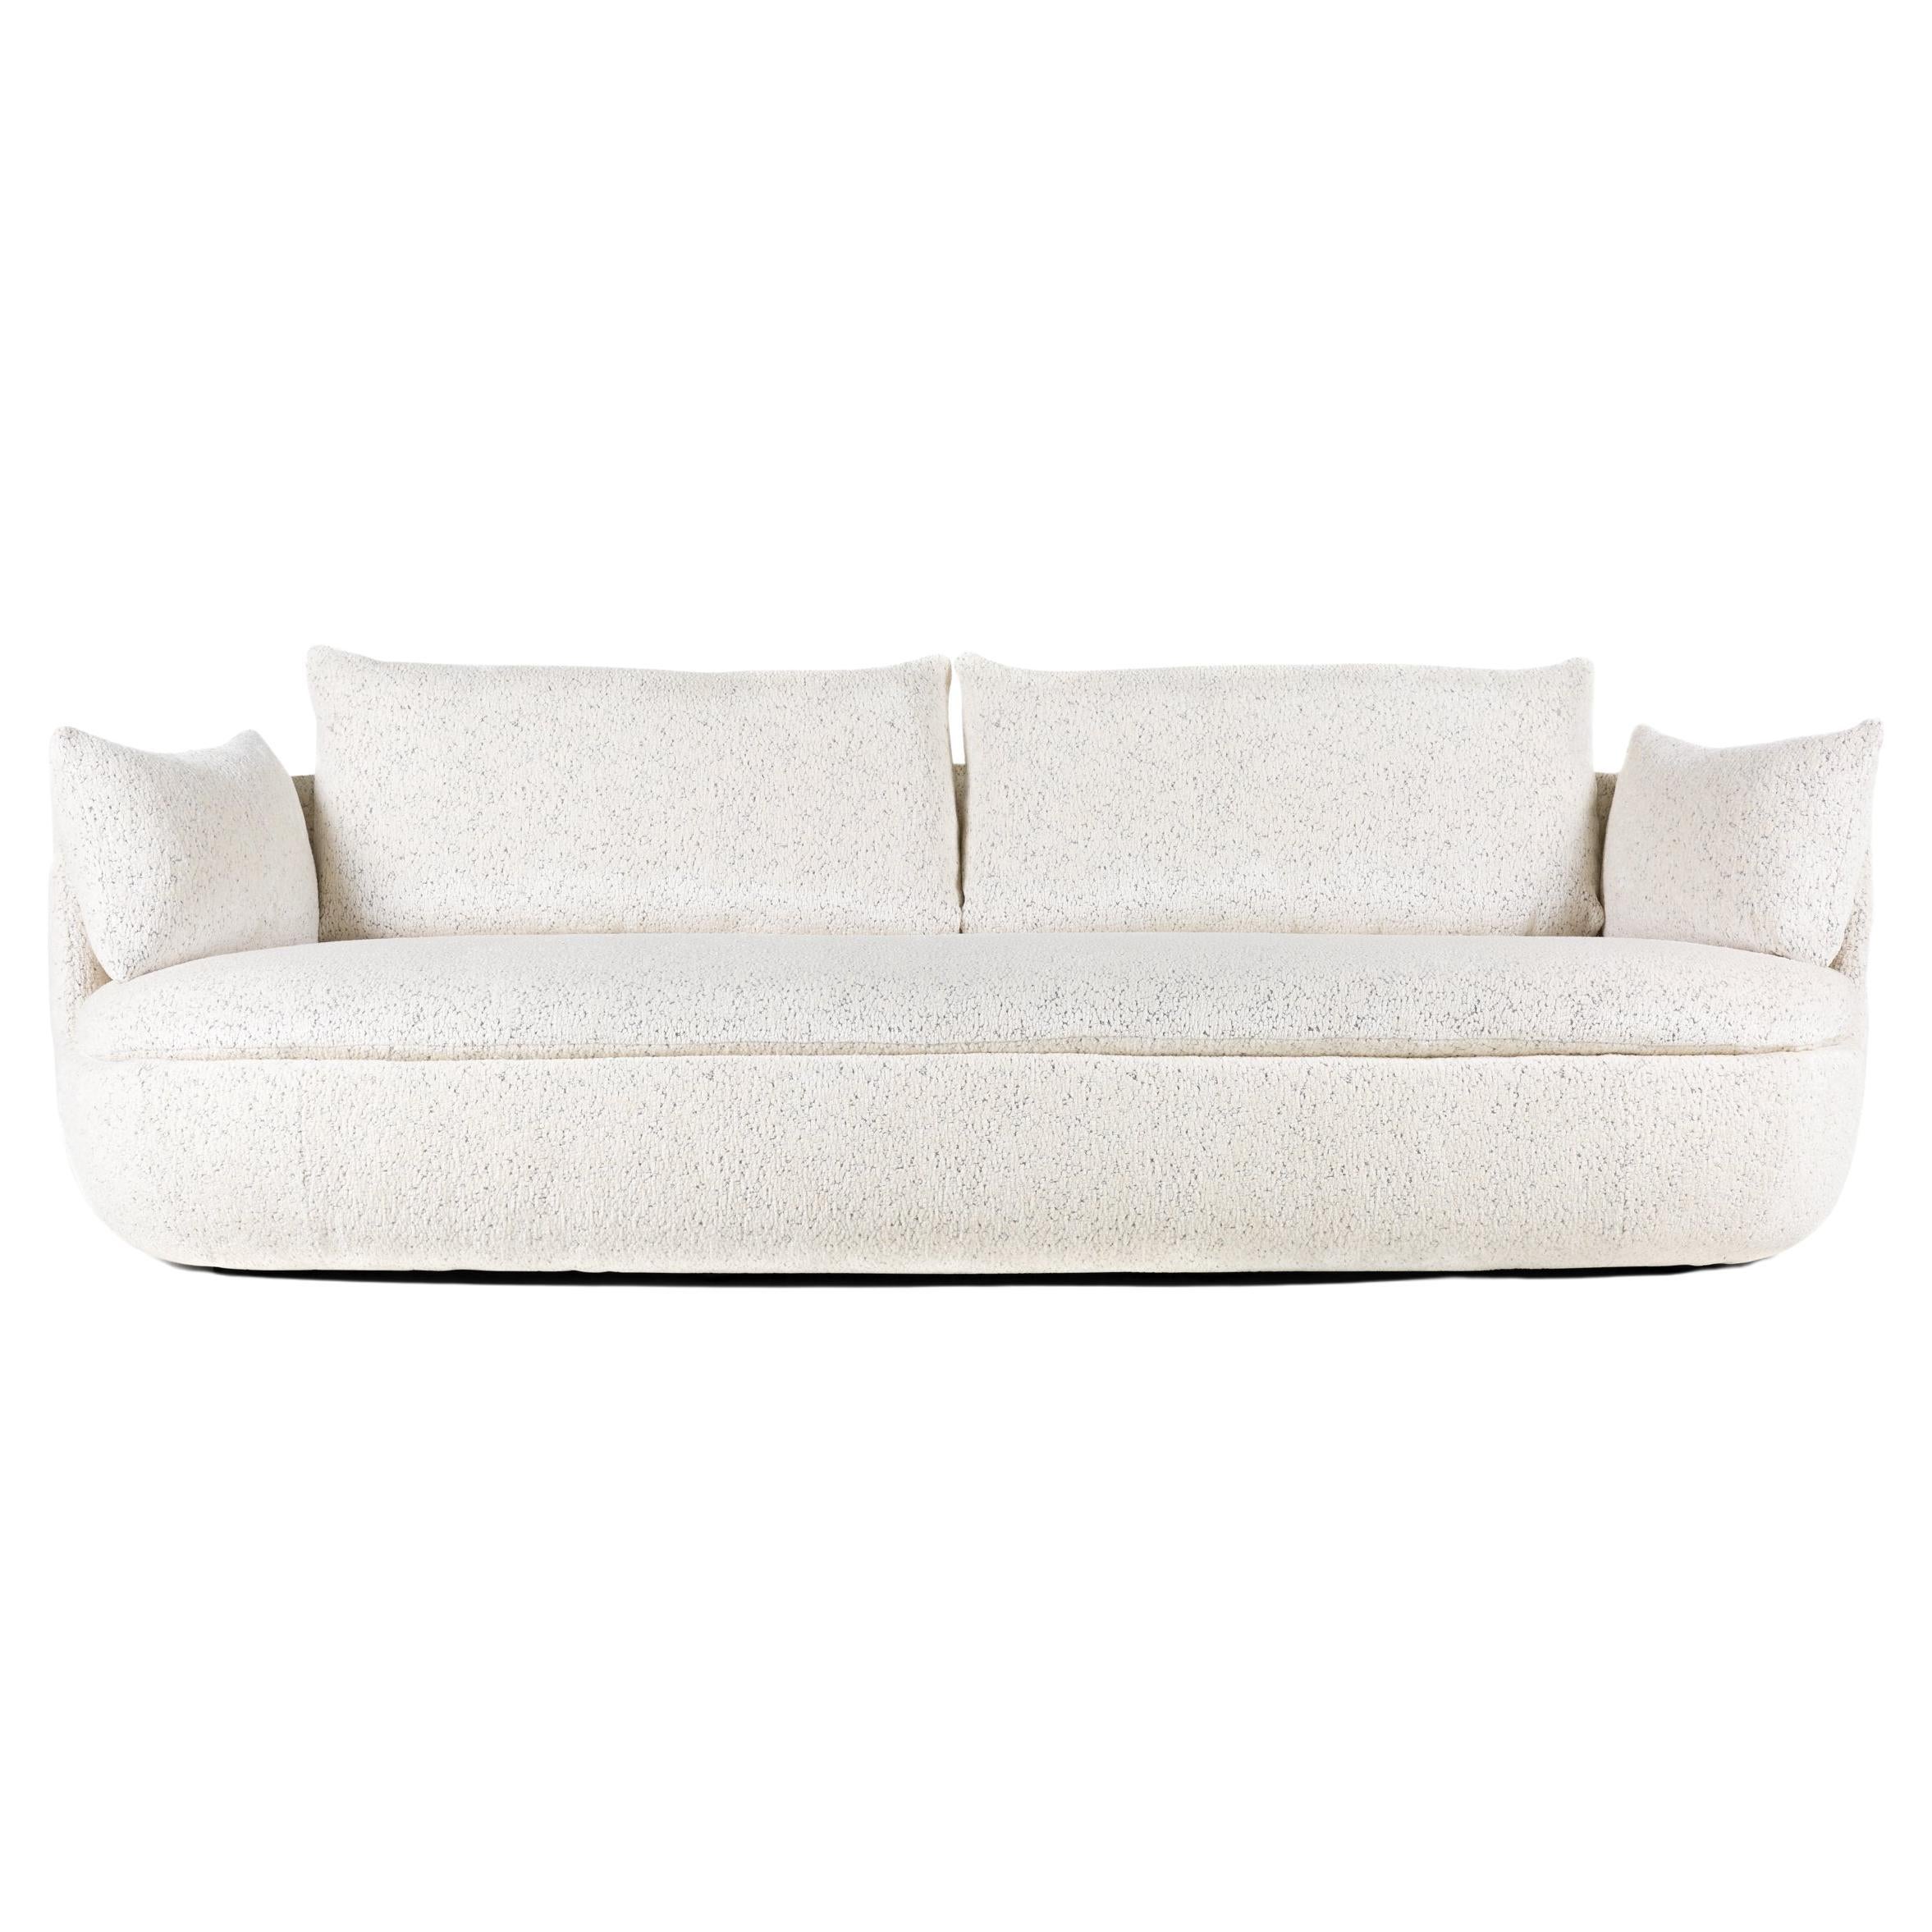 Moooi Bart Basic Sofa in Dodo Pavone Jacquard White Upholstery For Sale